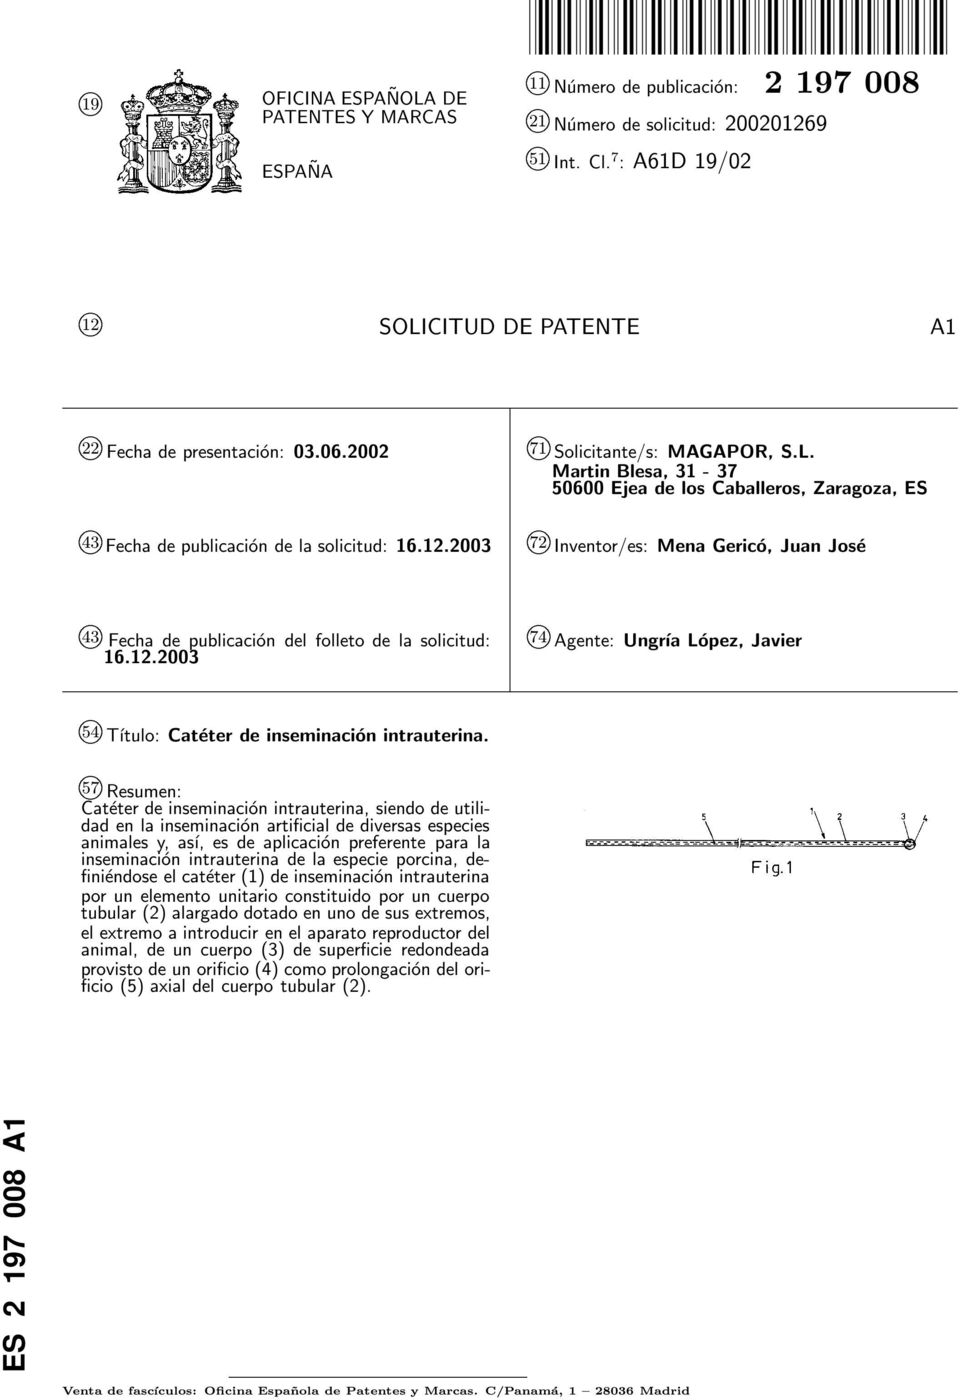 12.2003 k 74 Agente: Ungría López, Javier k 4 Título: Catéter de inseminación intrauterina.